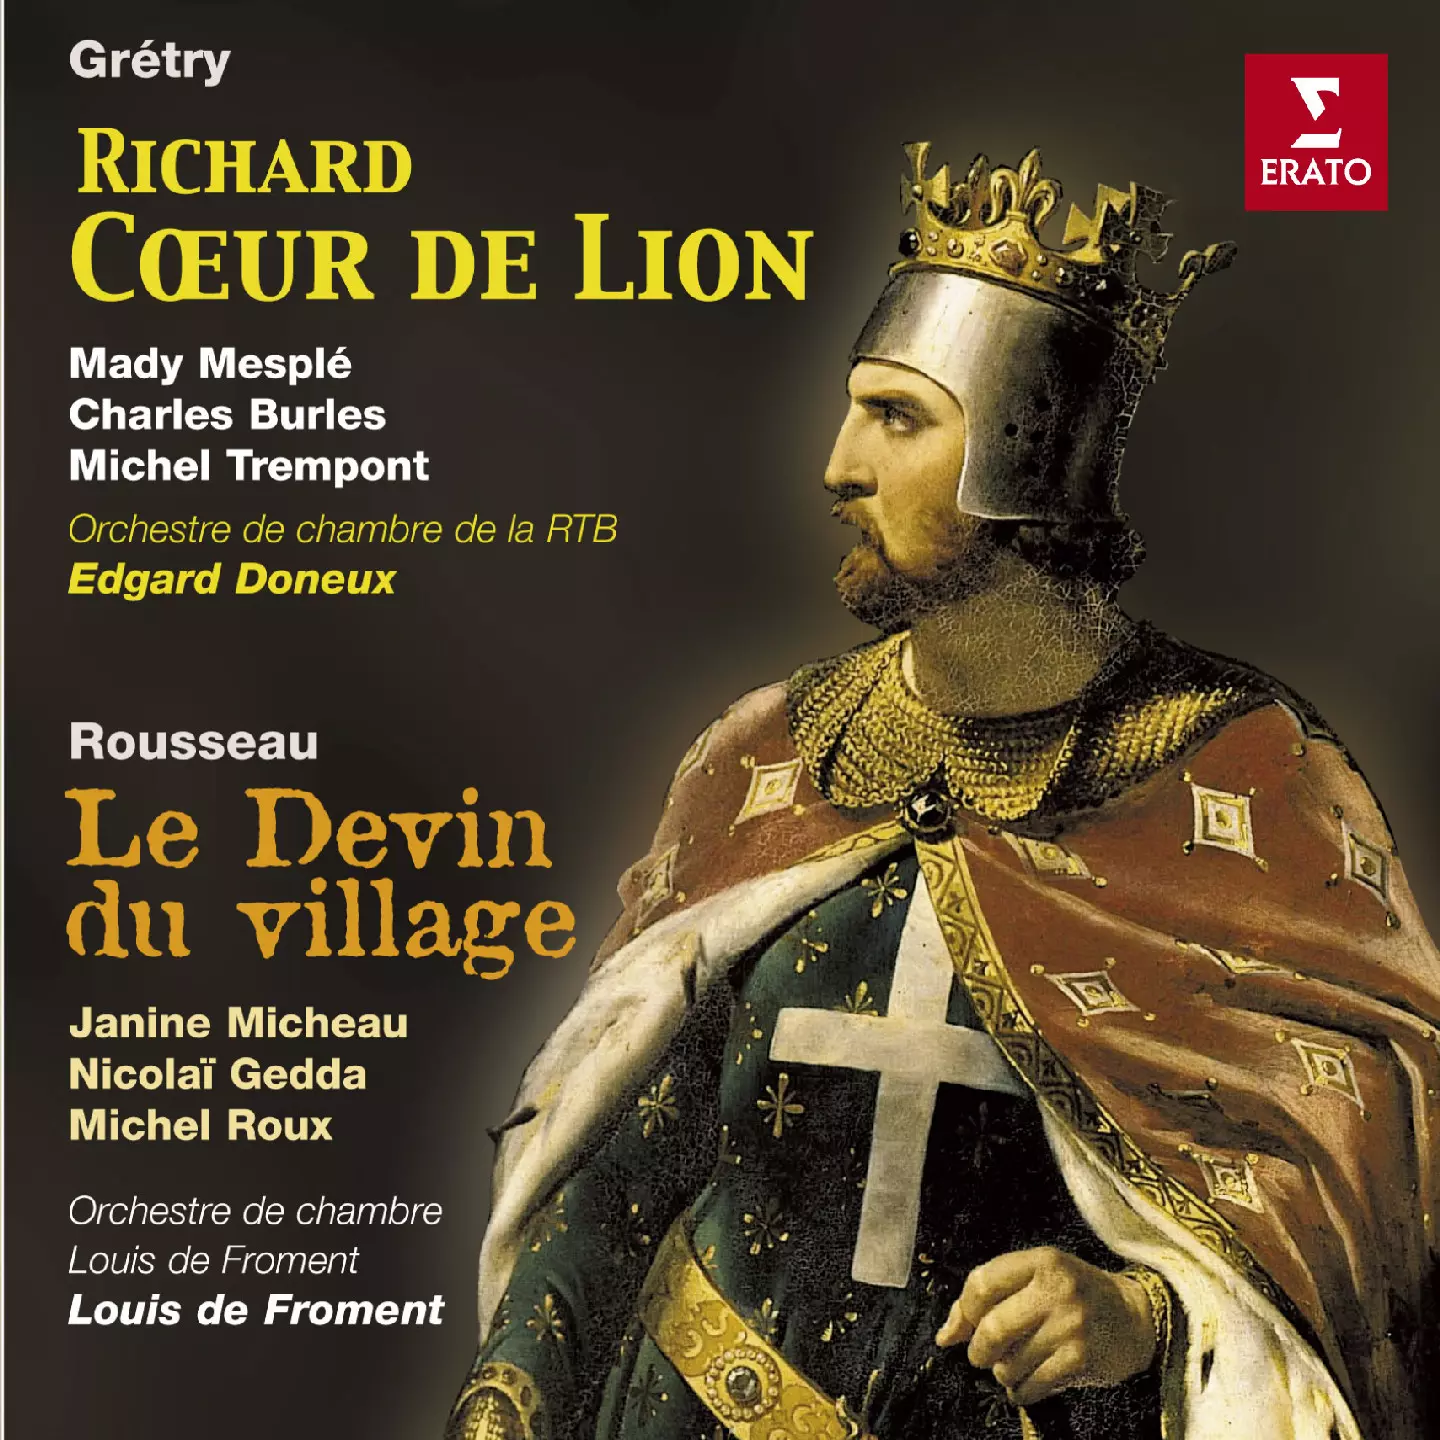 Grétry:Richard Coeur de Lion / Rousseau:Le devin du village